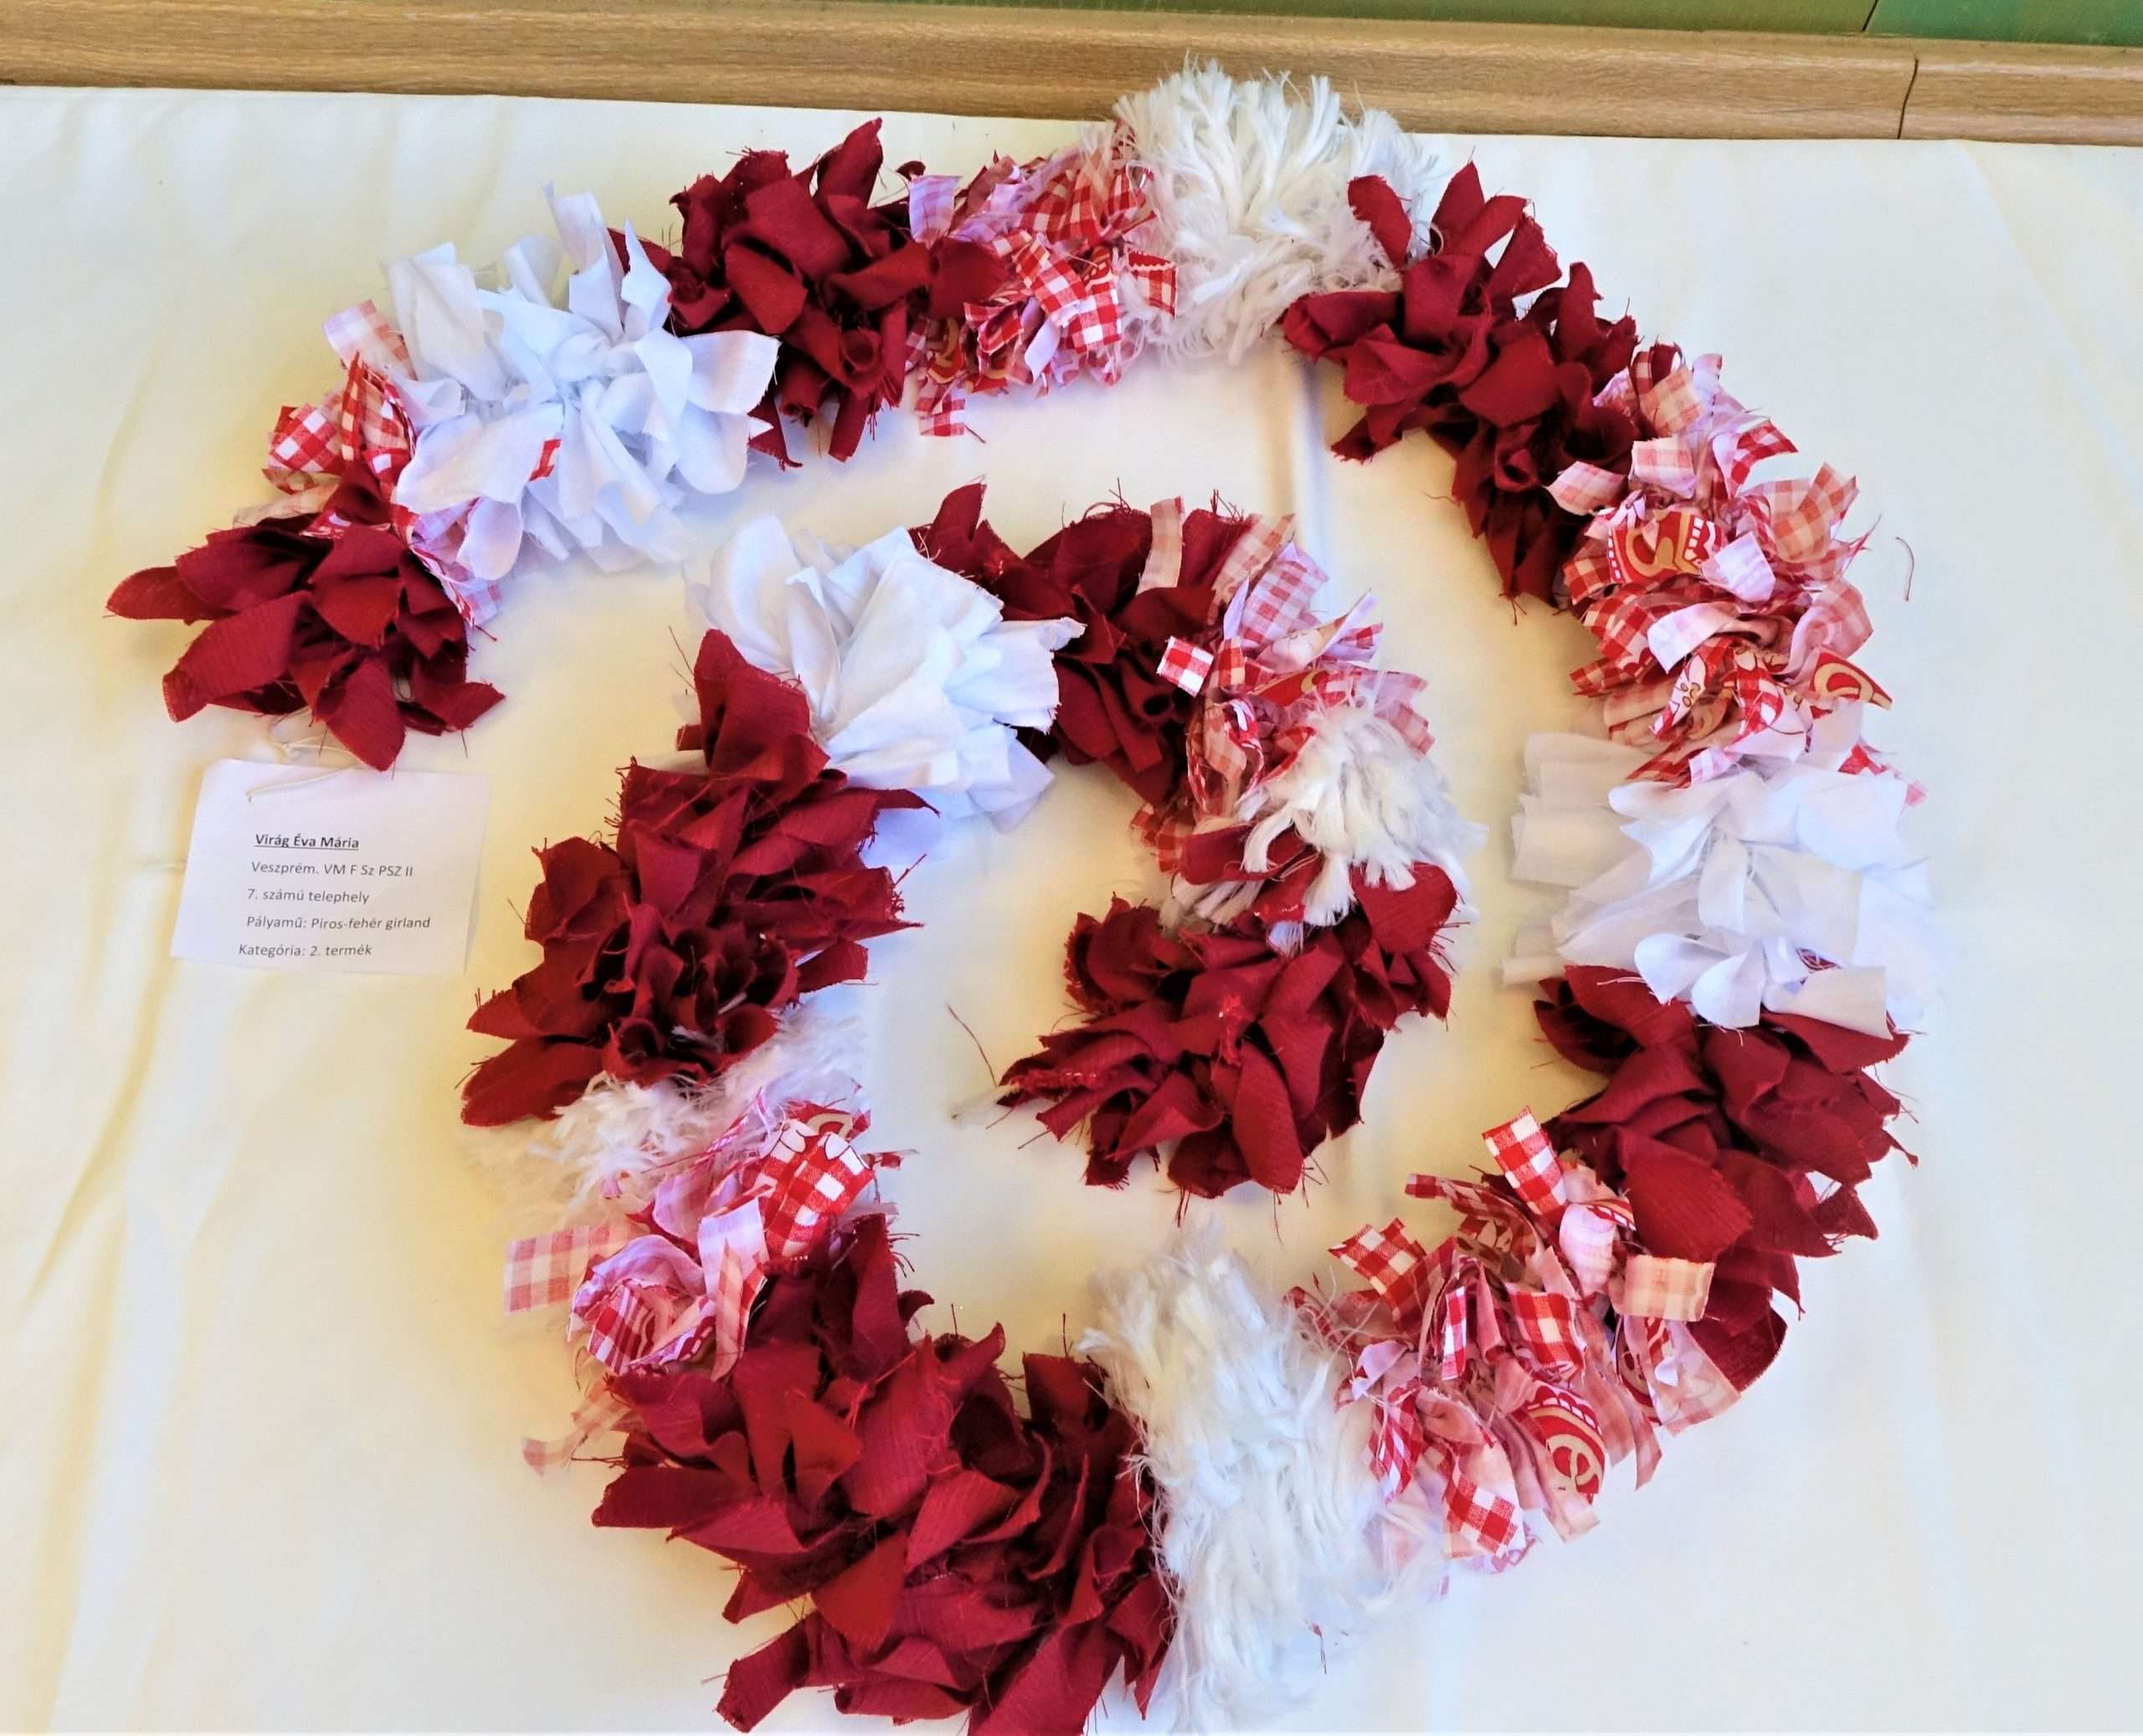 A képen egy körülbelül egy méter hosszú girland látható, amelyet piros és fehér textilcsíkokból készült virágok alkotnak. 